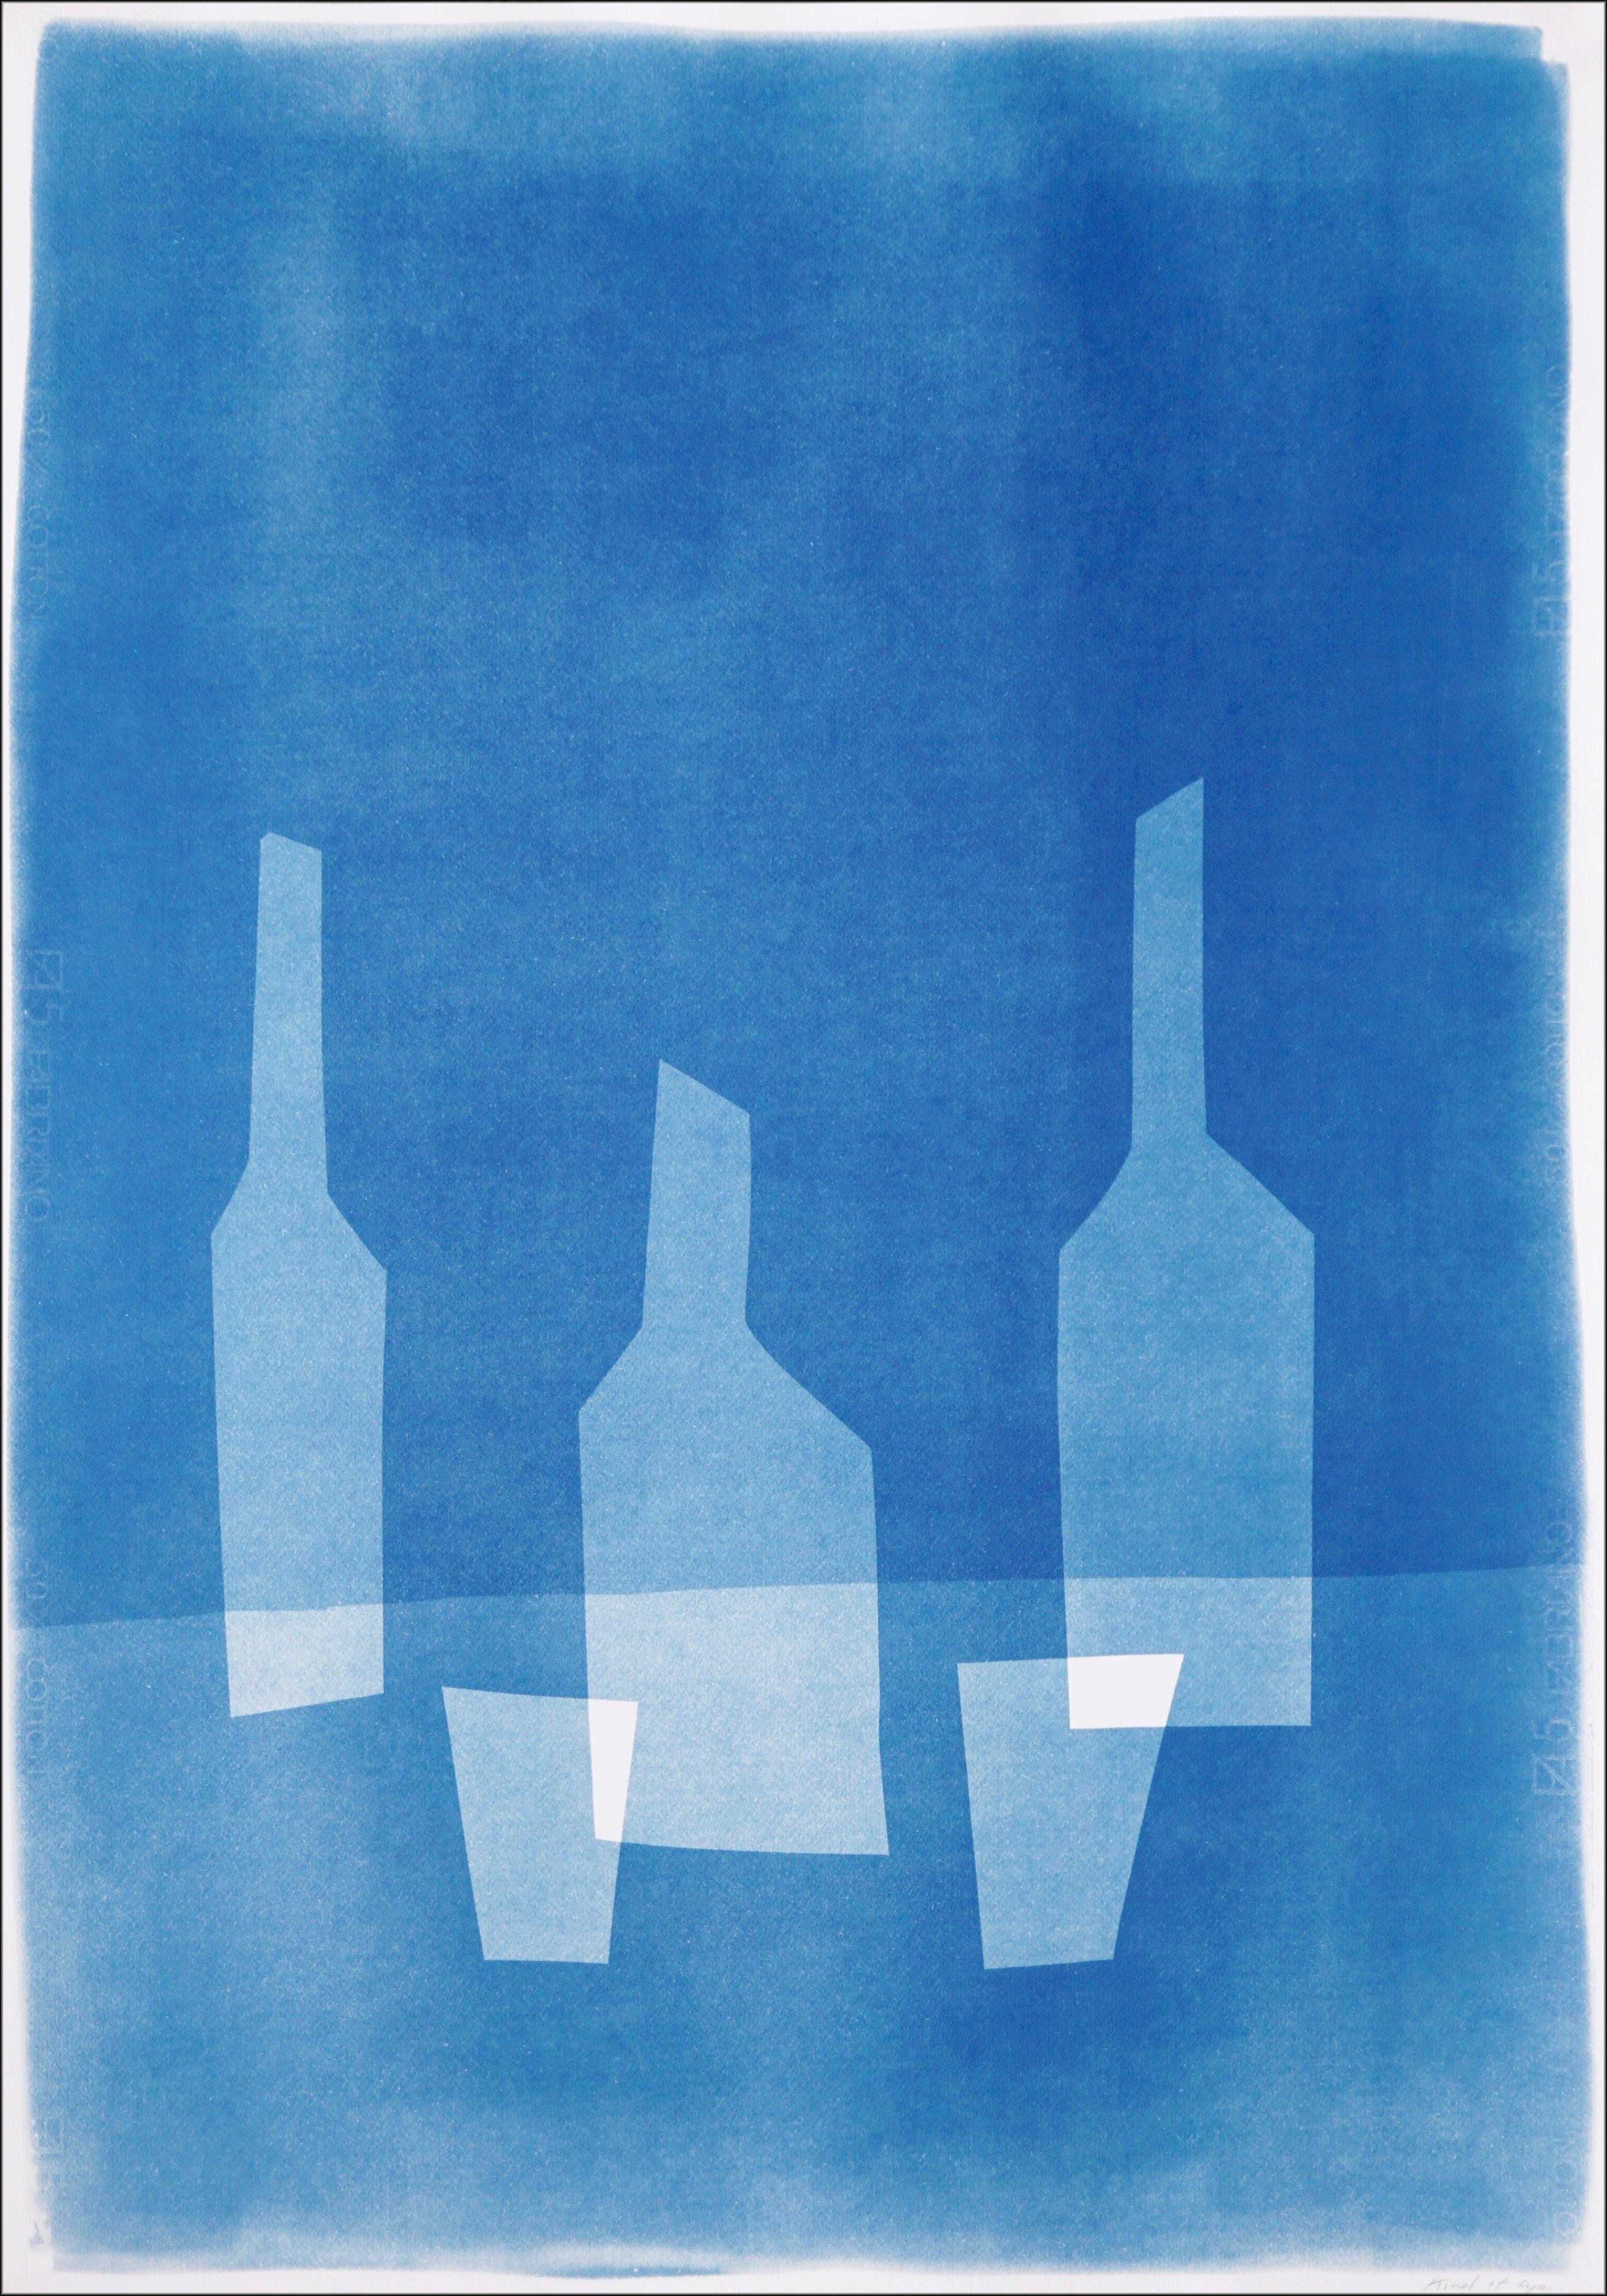 Botellas de árbol para dos personas, tonos azules, monotipo moderno, bodegón vertical